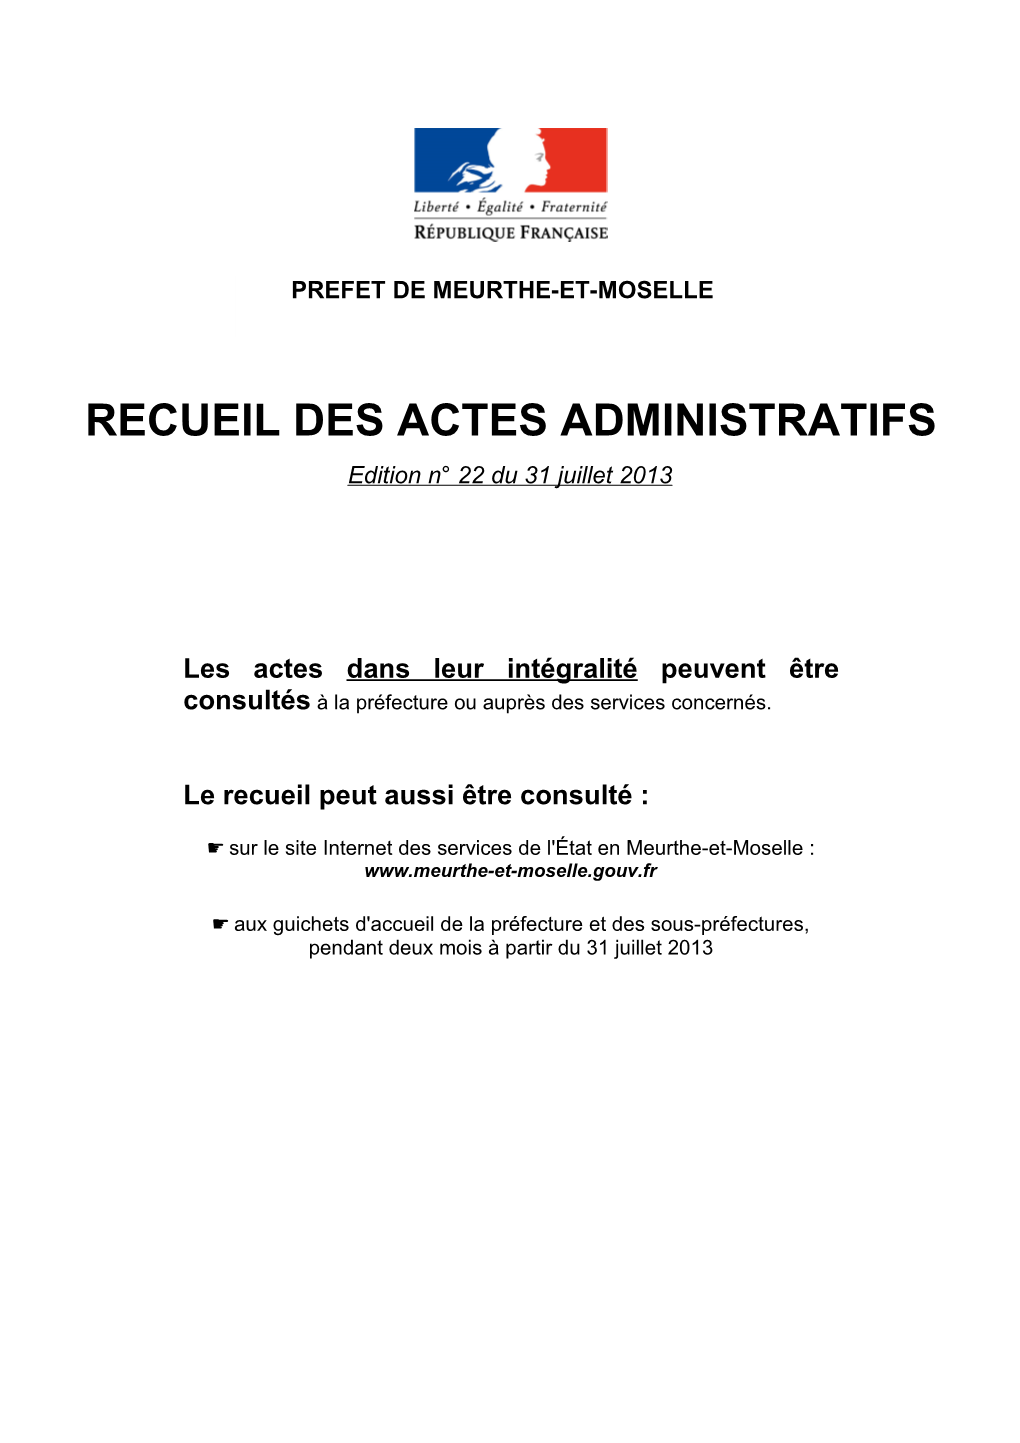 RECUEIL DES ACTES ADMINISTRATIFS Edition N° 22 Du 31 Juillet 2013